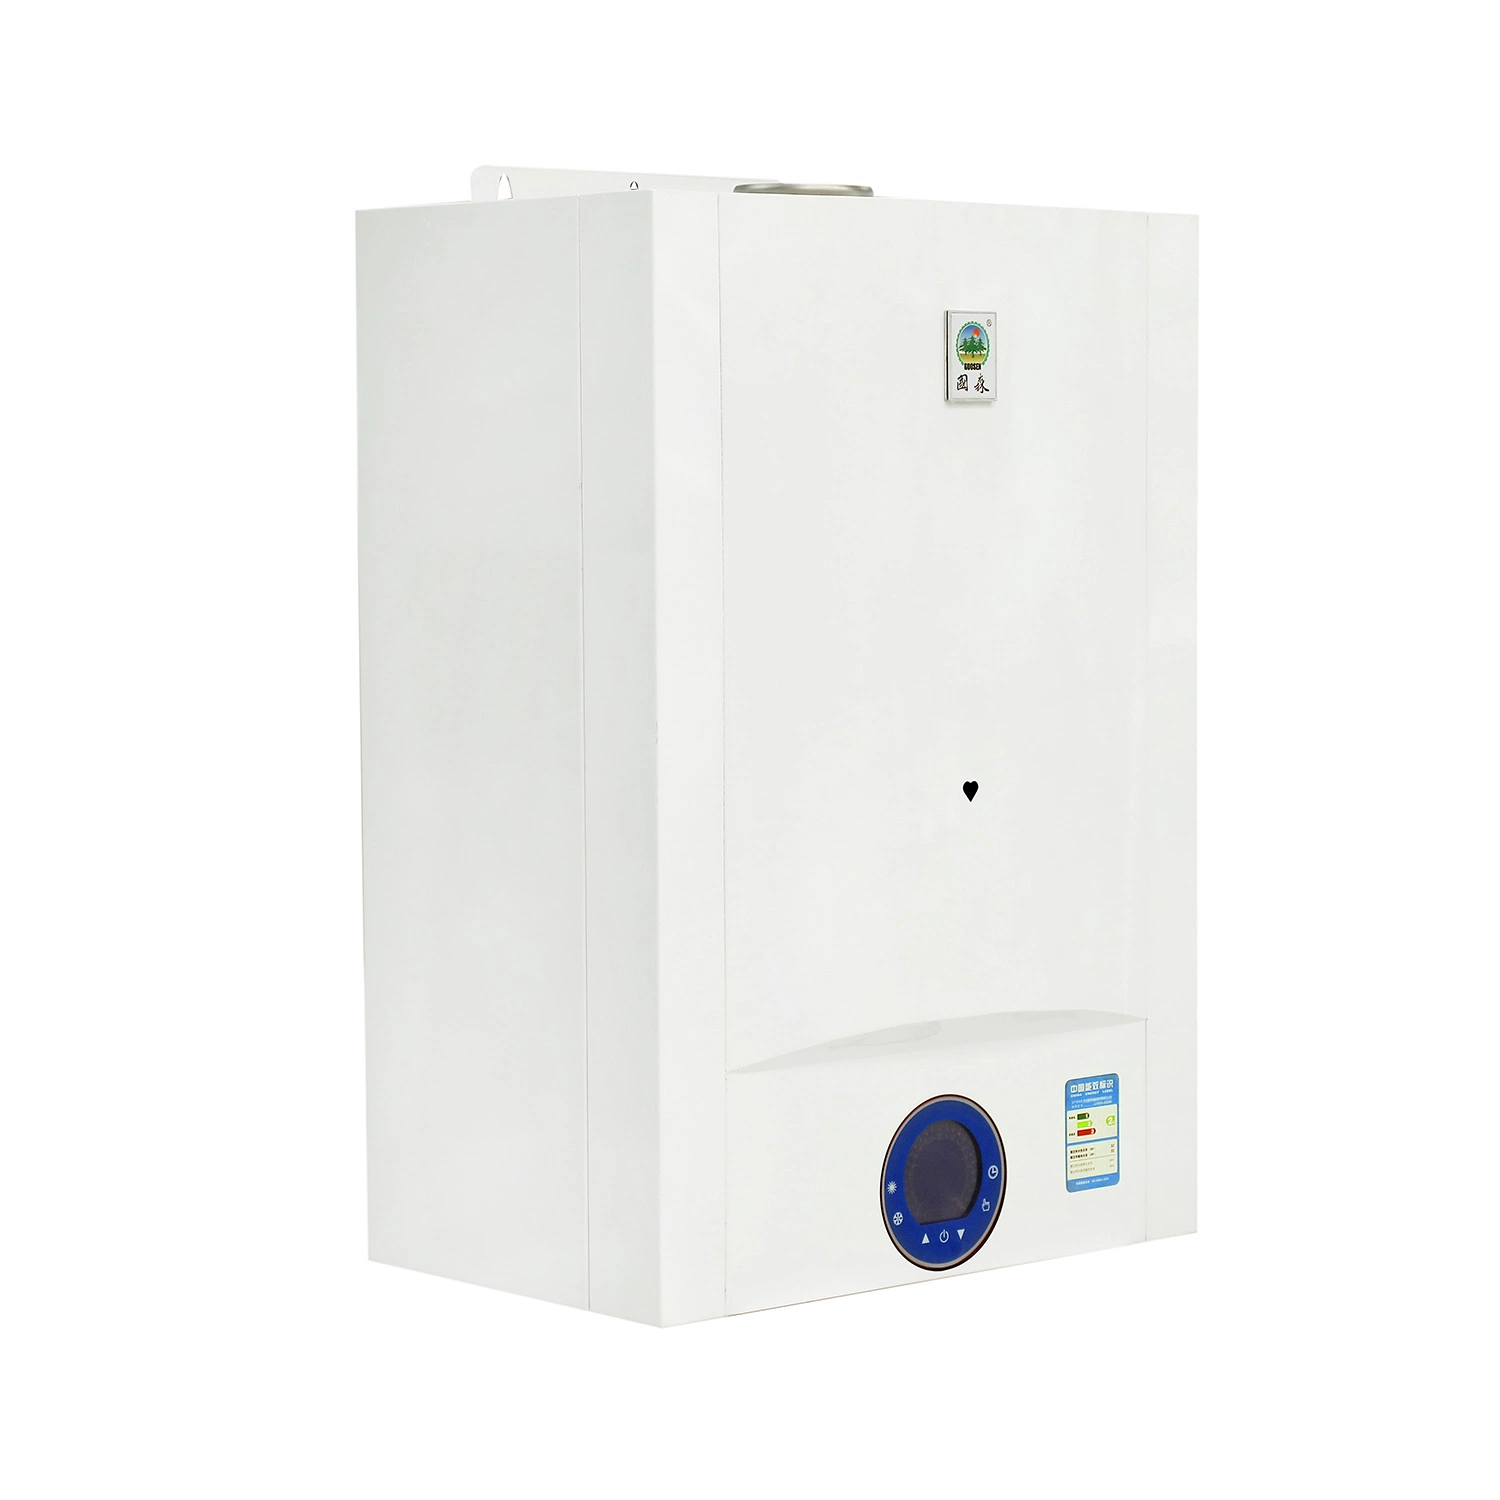 15,4 kg/min. De casa caldeiras a gás de condensação pré-misturadas para aquecimento E água quente doméstica